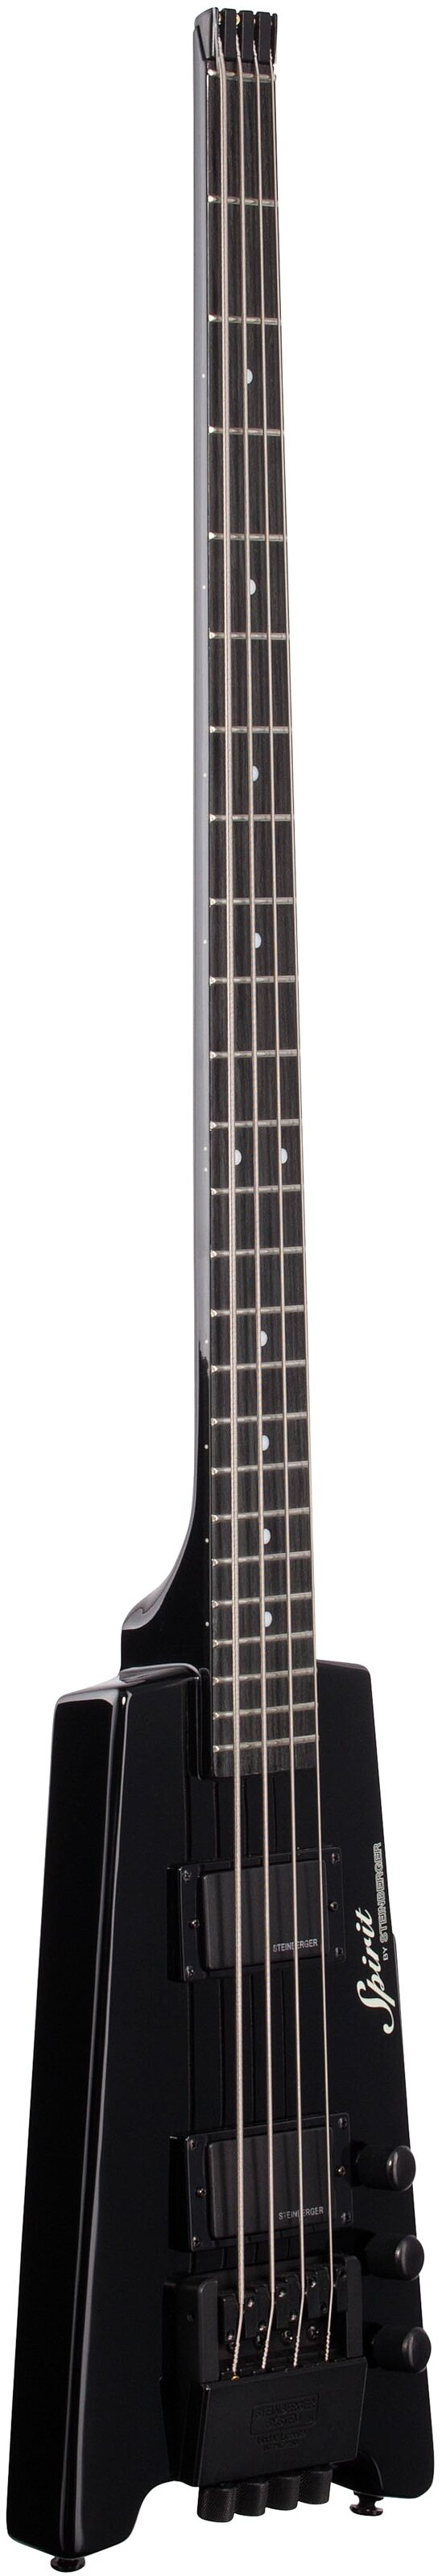 Steinberger Spirit XT-2 Standard Electric Bass | zZounds